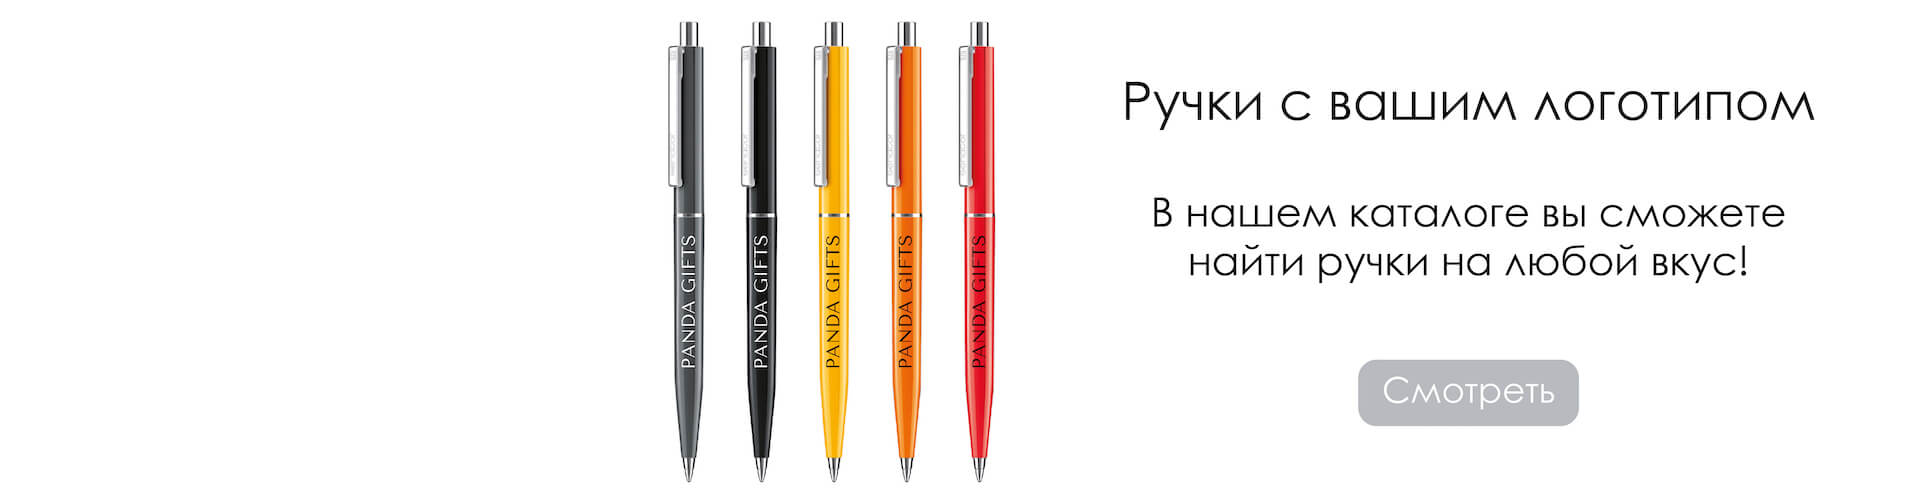 Ручки с вашим логотипом